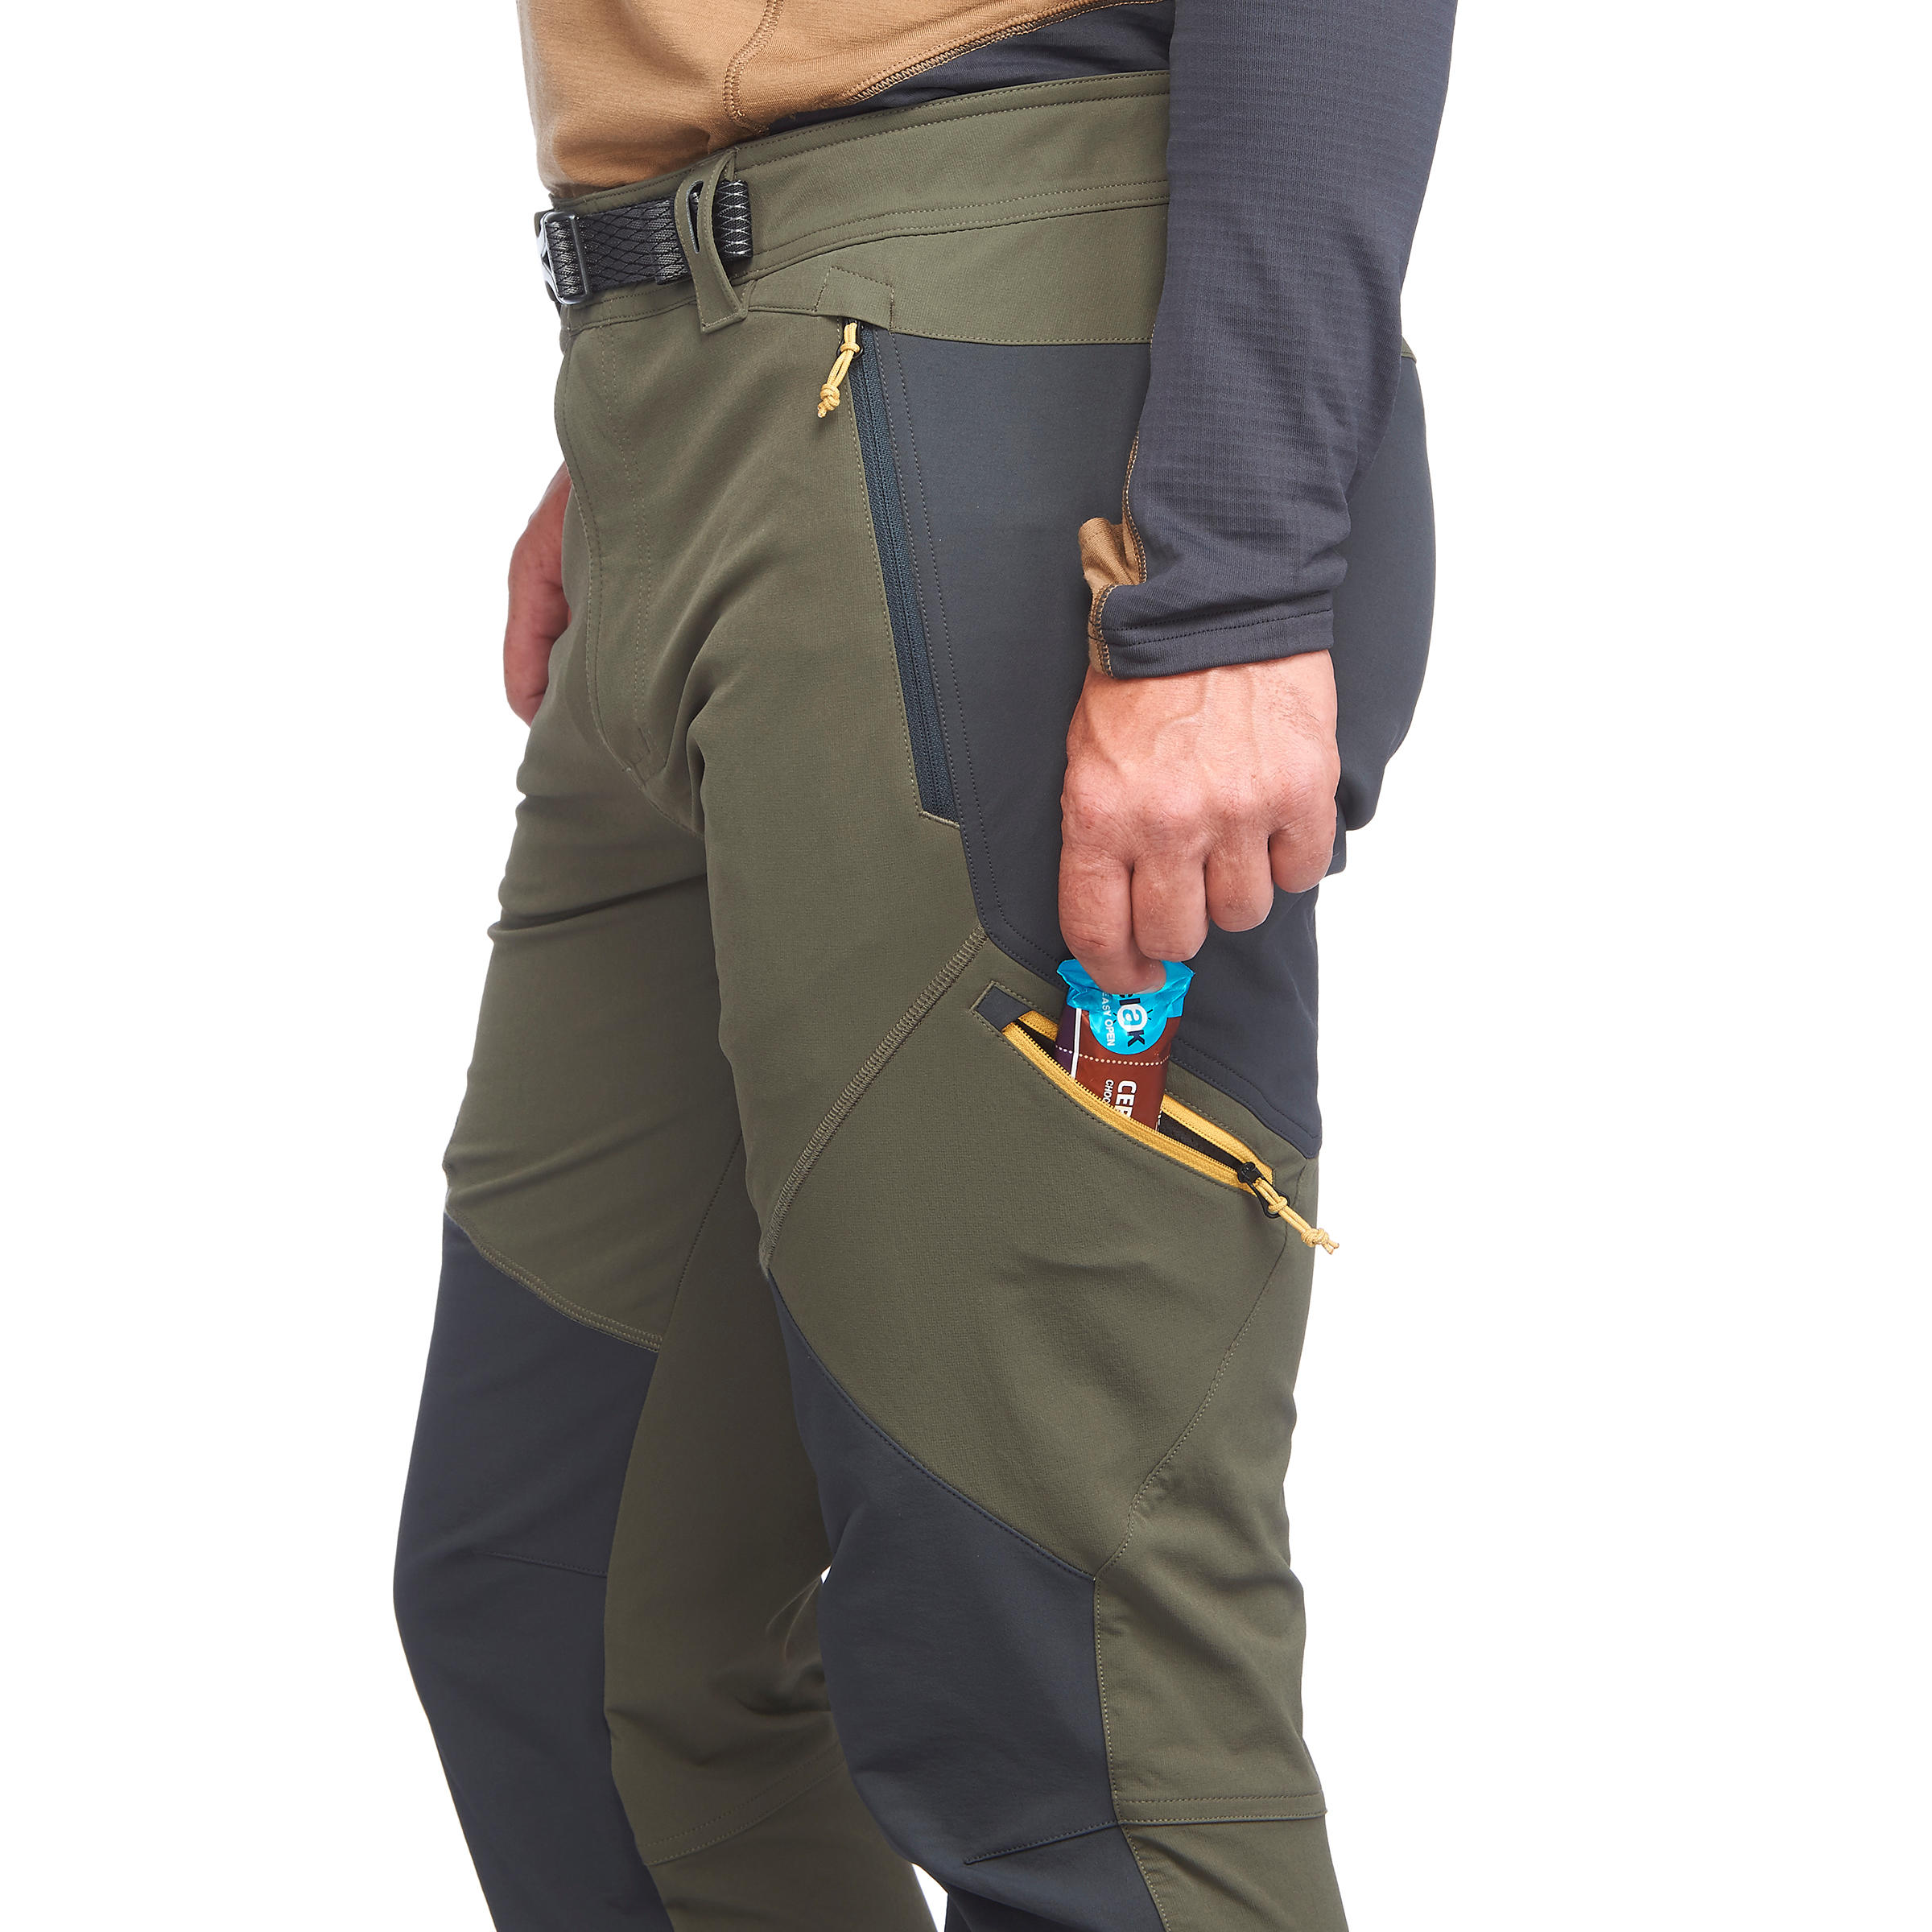 Buy Mens Modular Pants Online  Quechua MH150 Modular Pants for Men